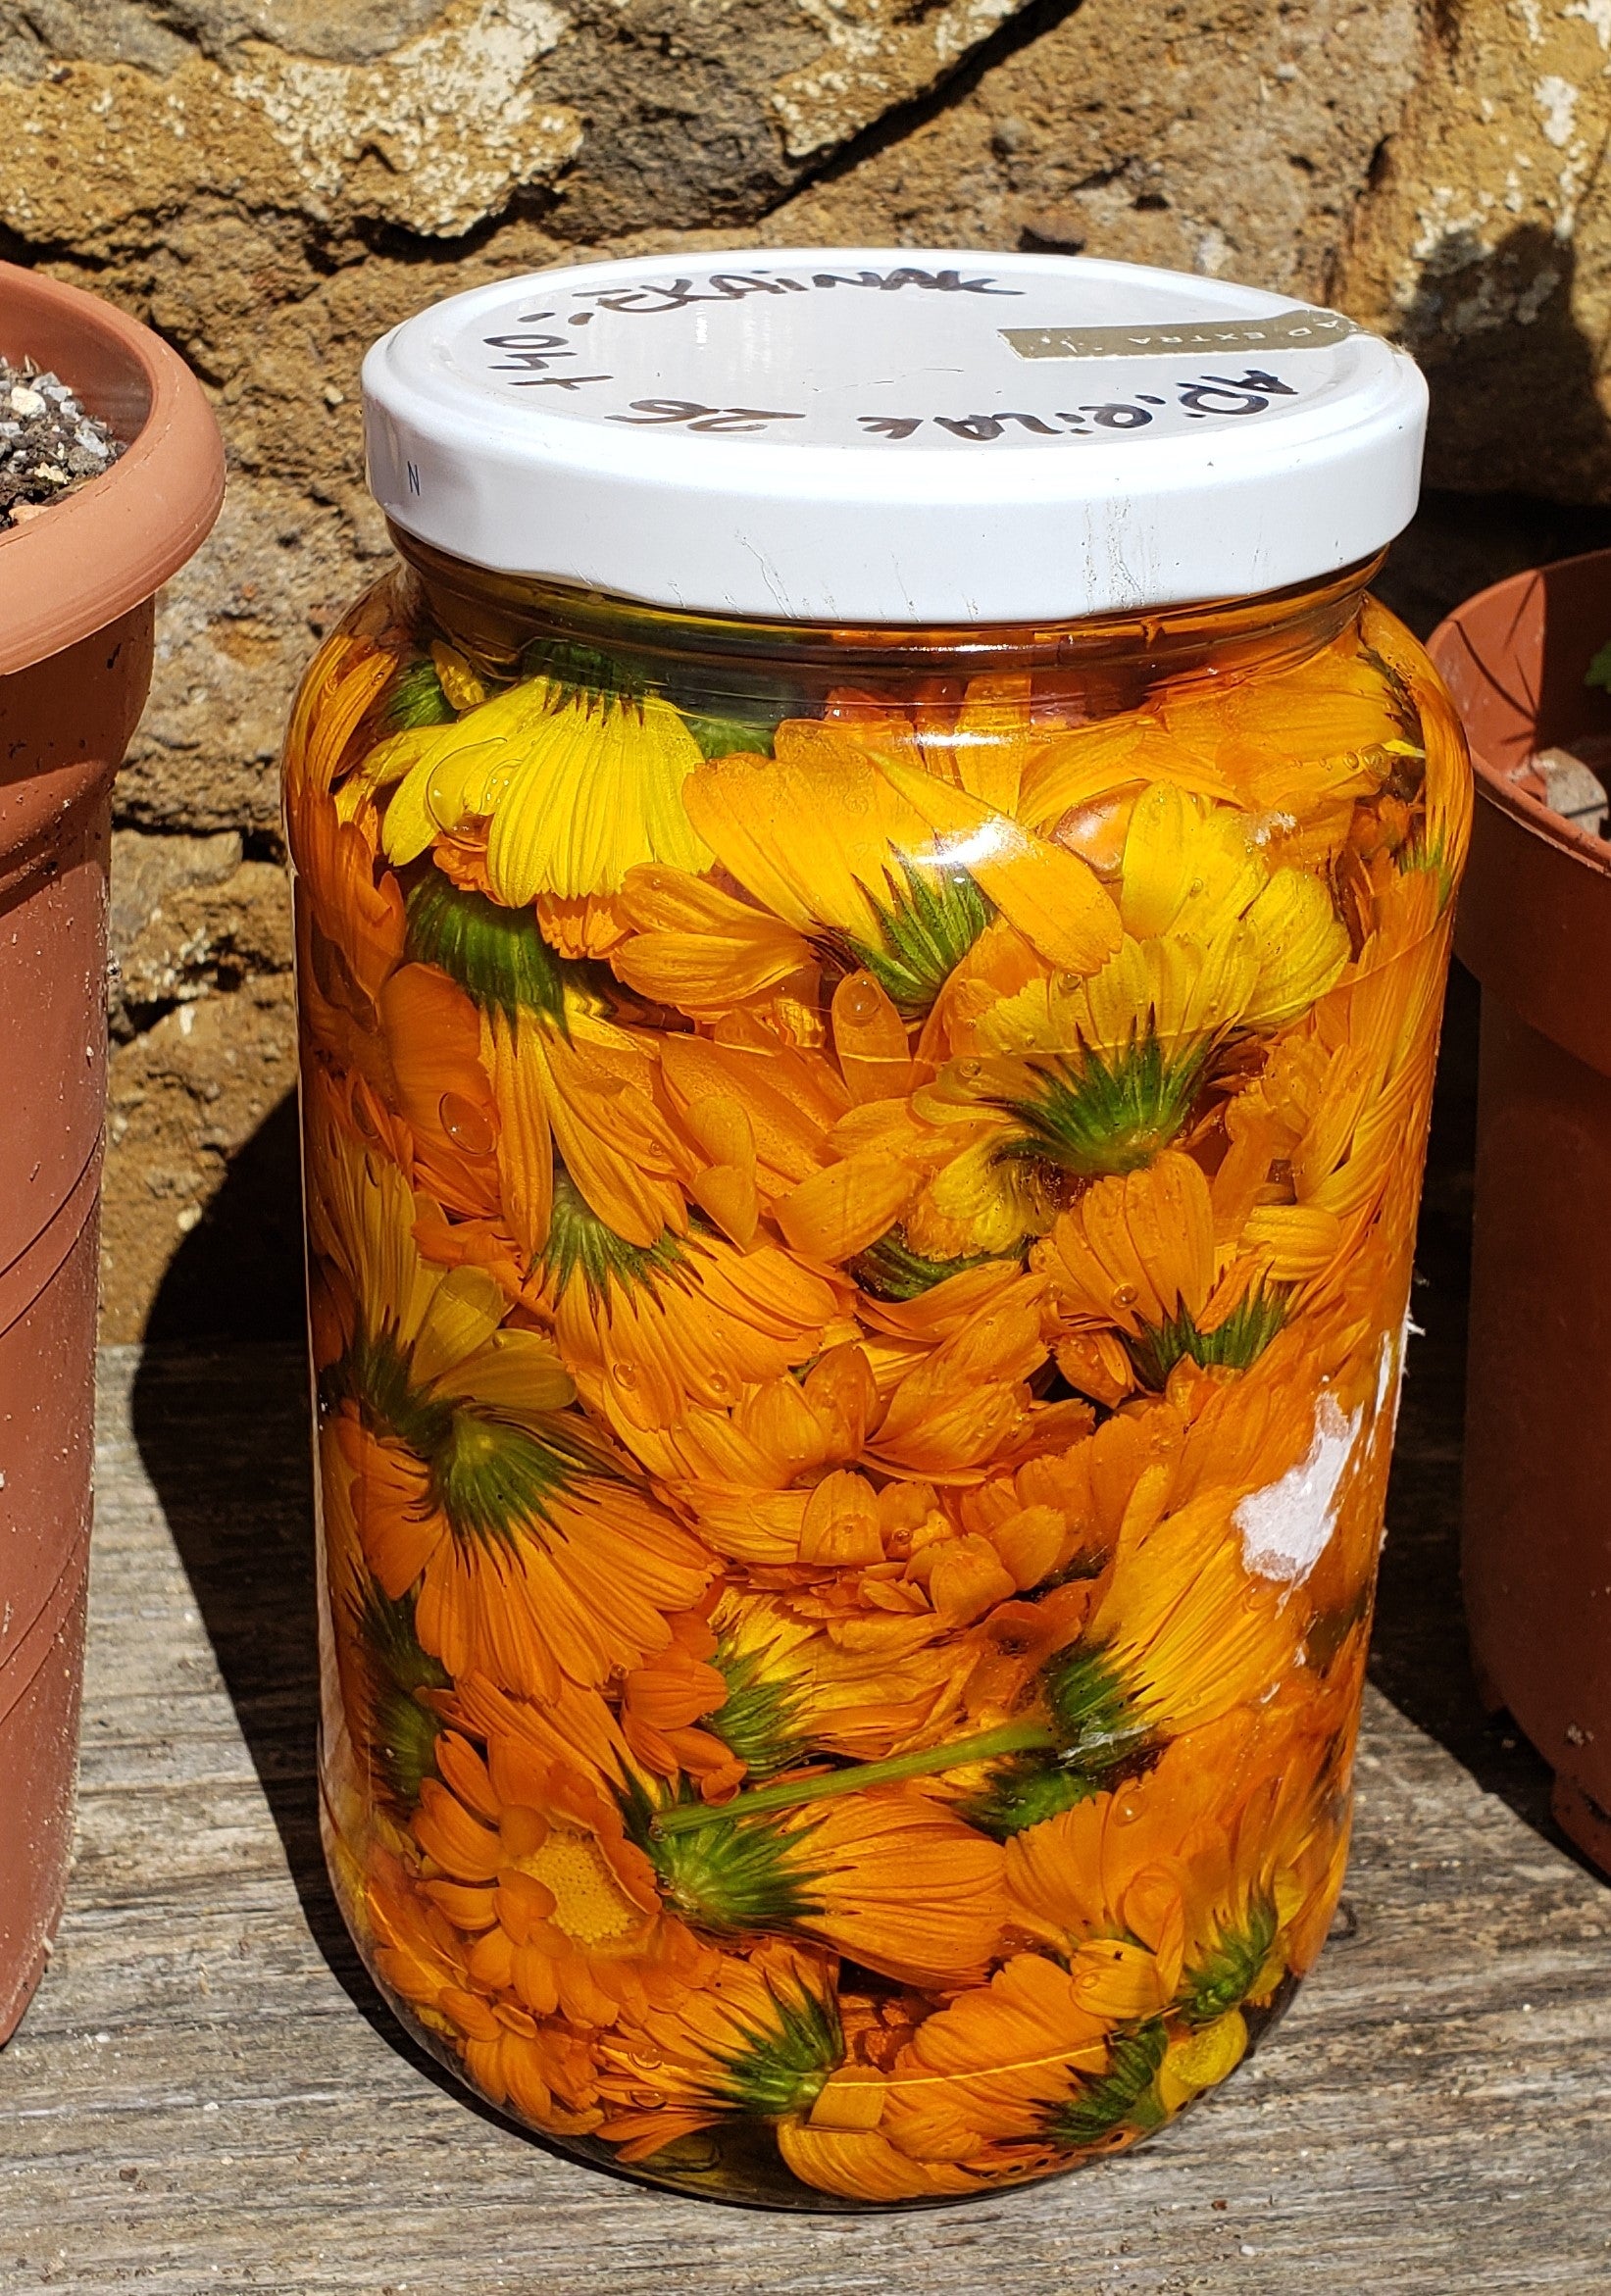 Bote de cristal de 500 ml, expuesto al sol, relleno de flores  de color naranja intenso de caléndula macerando en aceite de oliva virgen extra